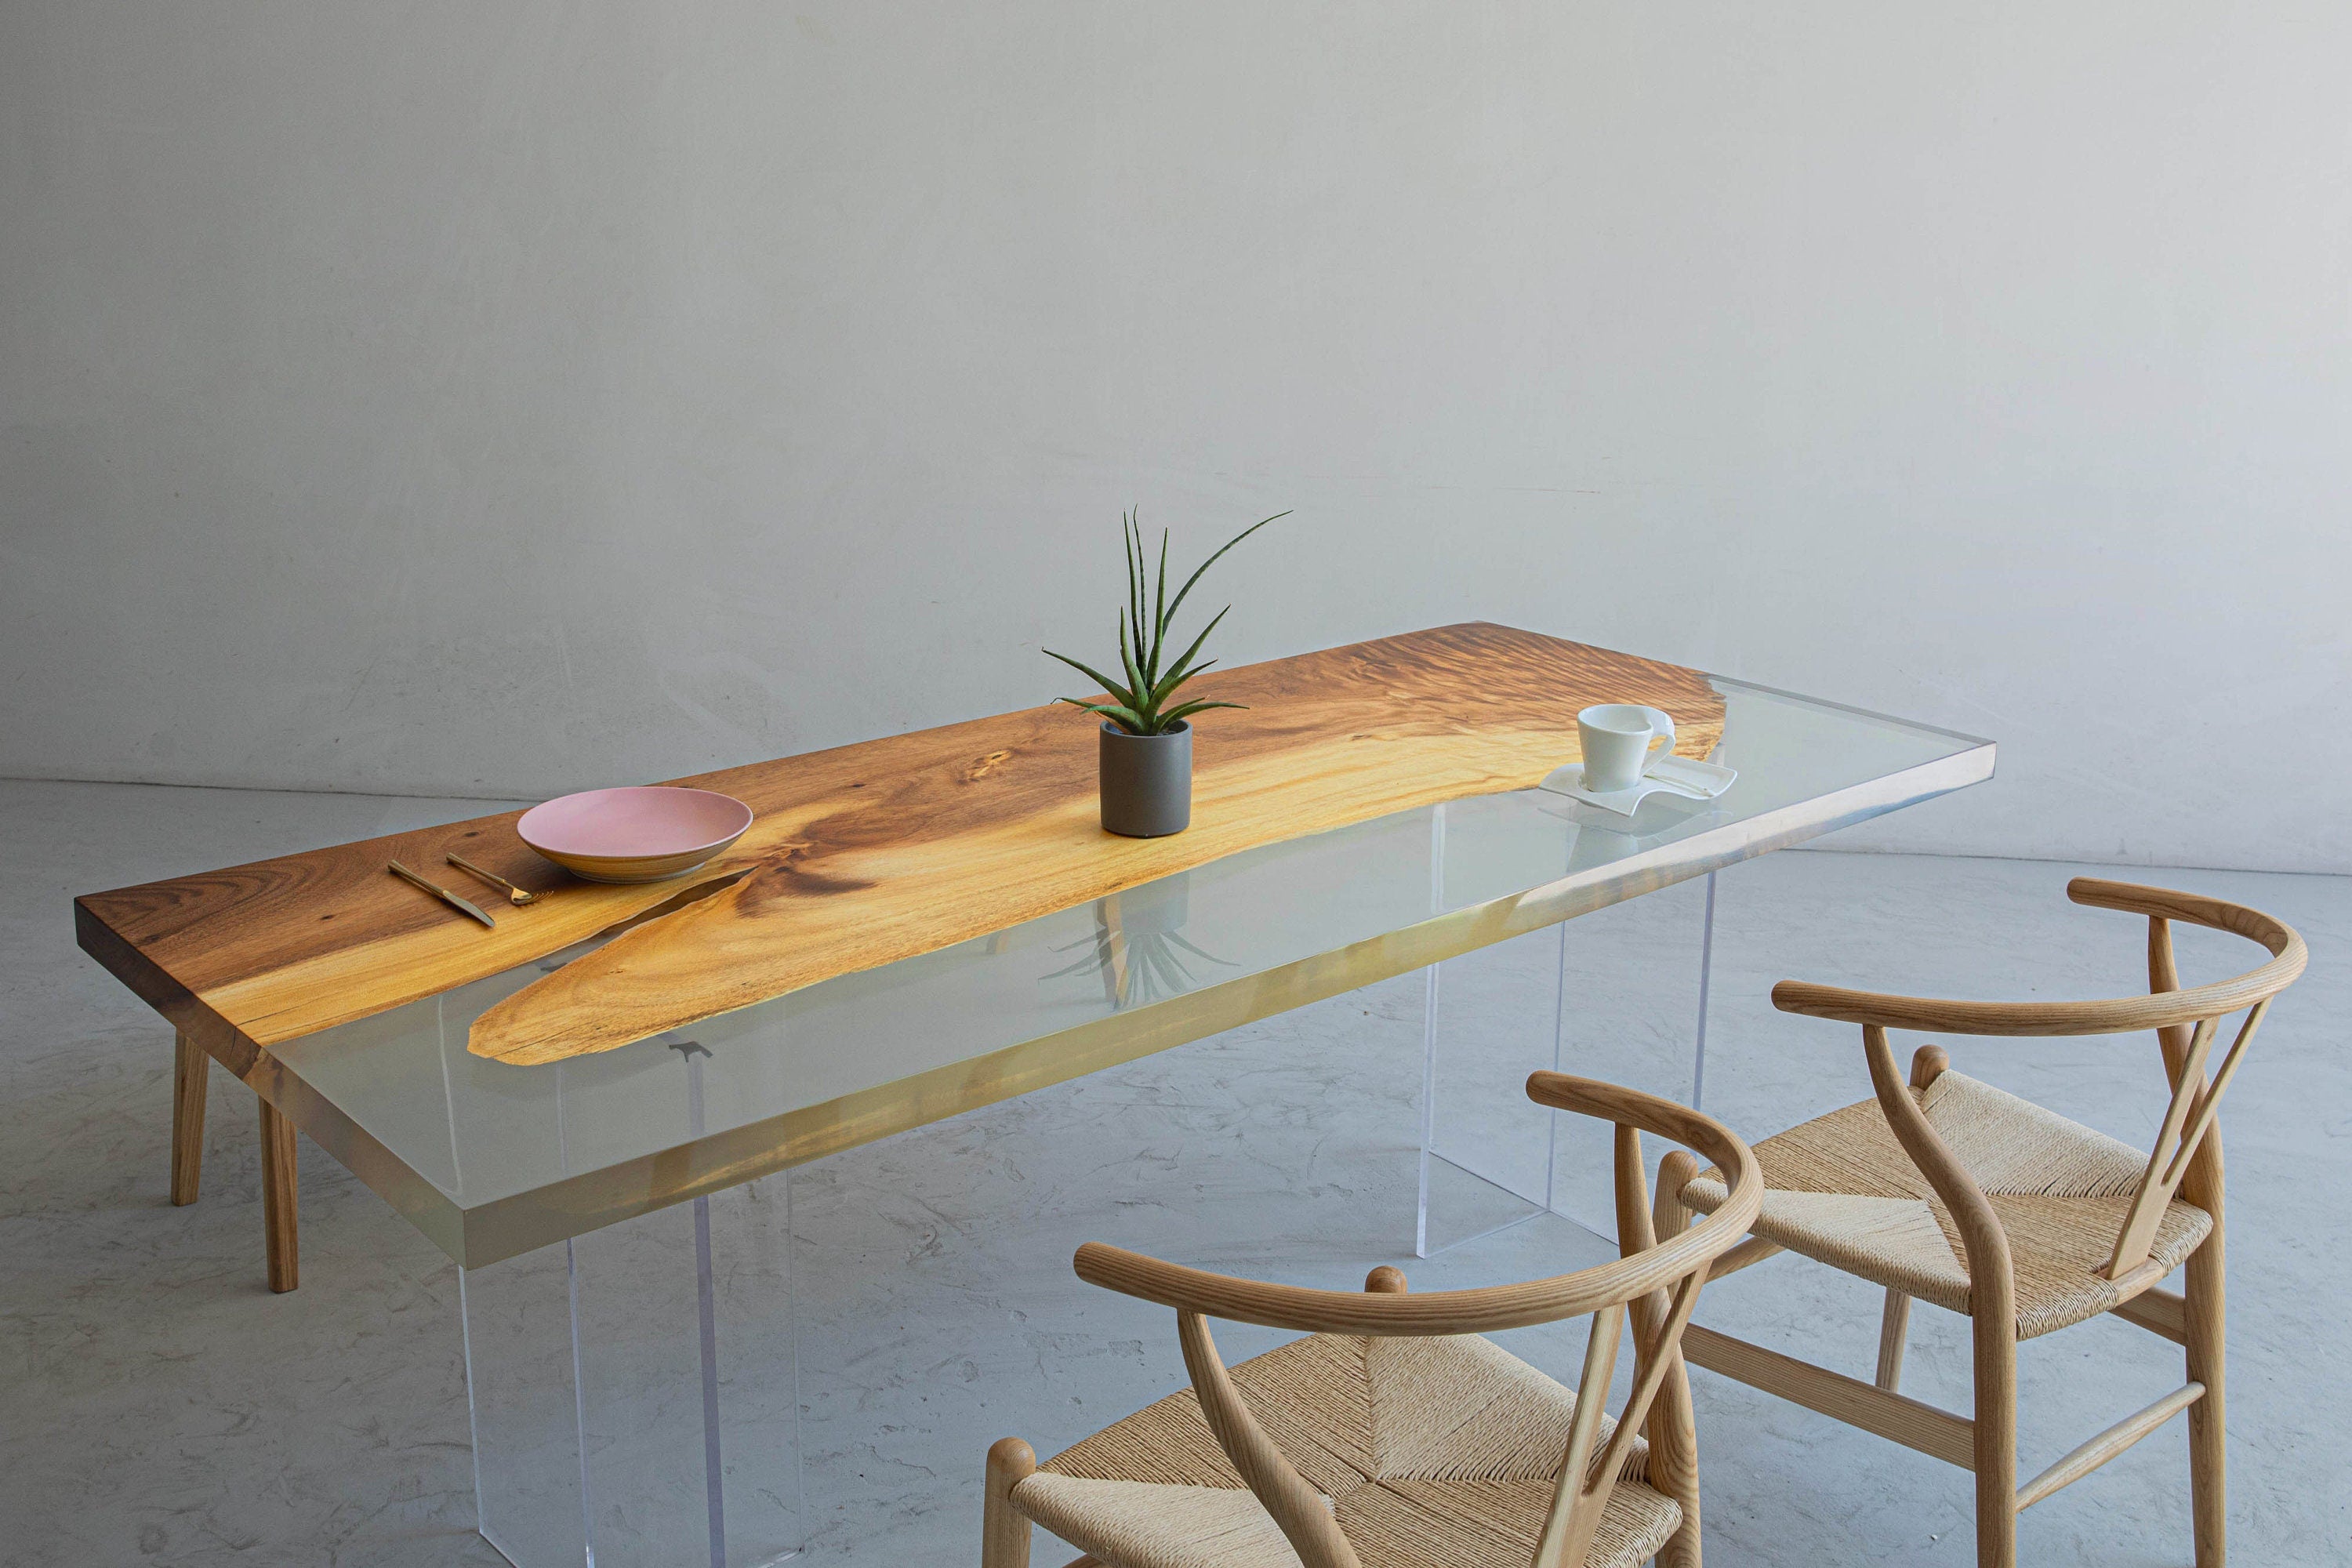 Piano d'appoggio in resina epossidica trasparente con opere d'arte essenziali, tavolo da pranzo in legno naturale, tavolo da caffè